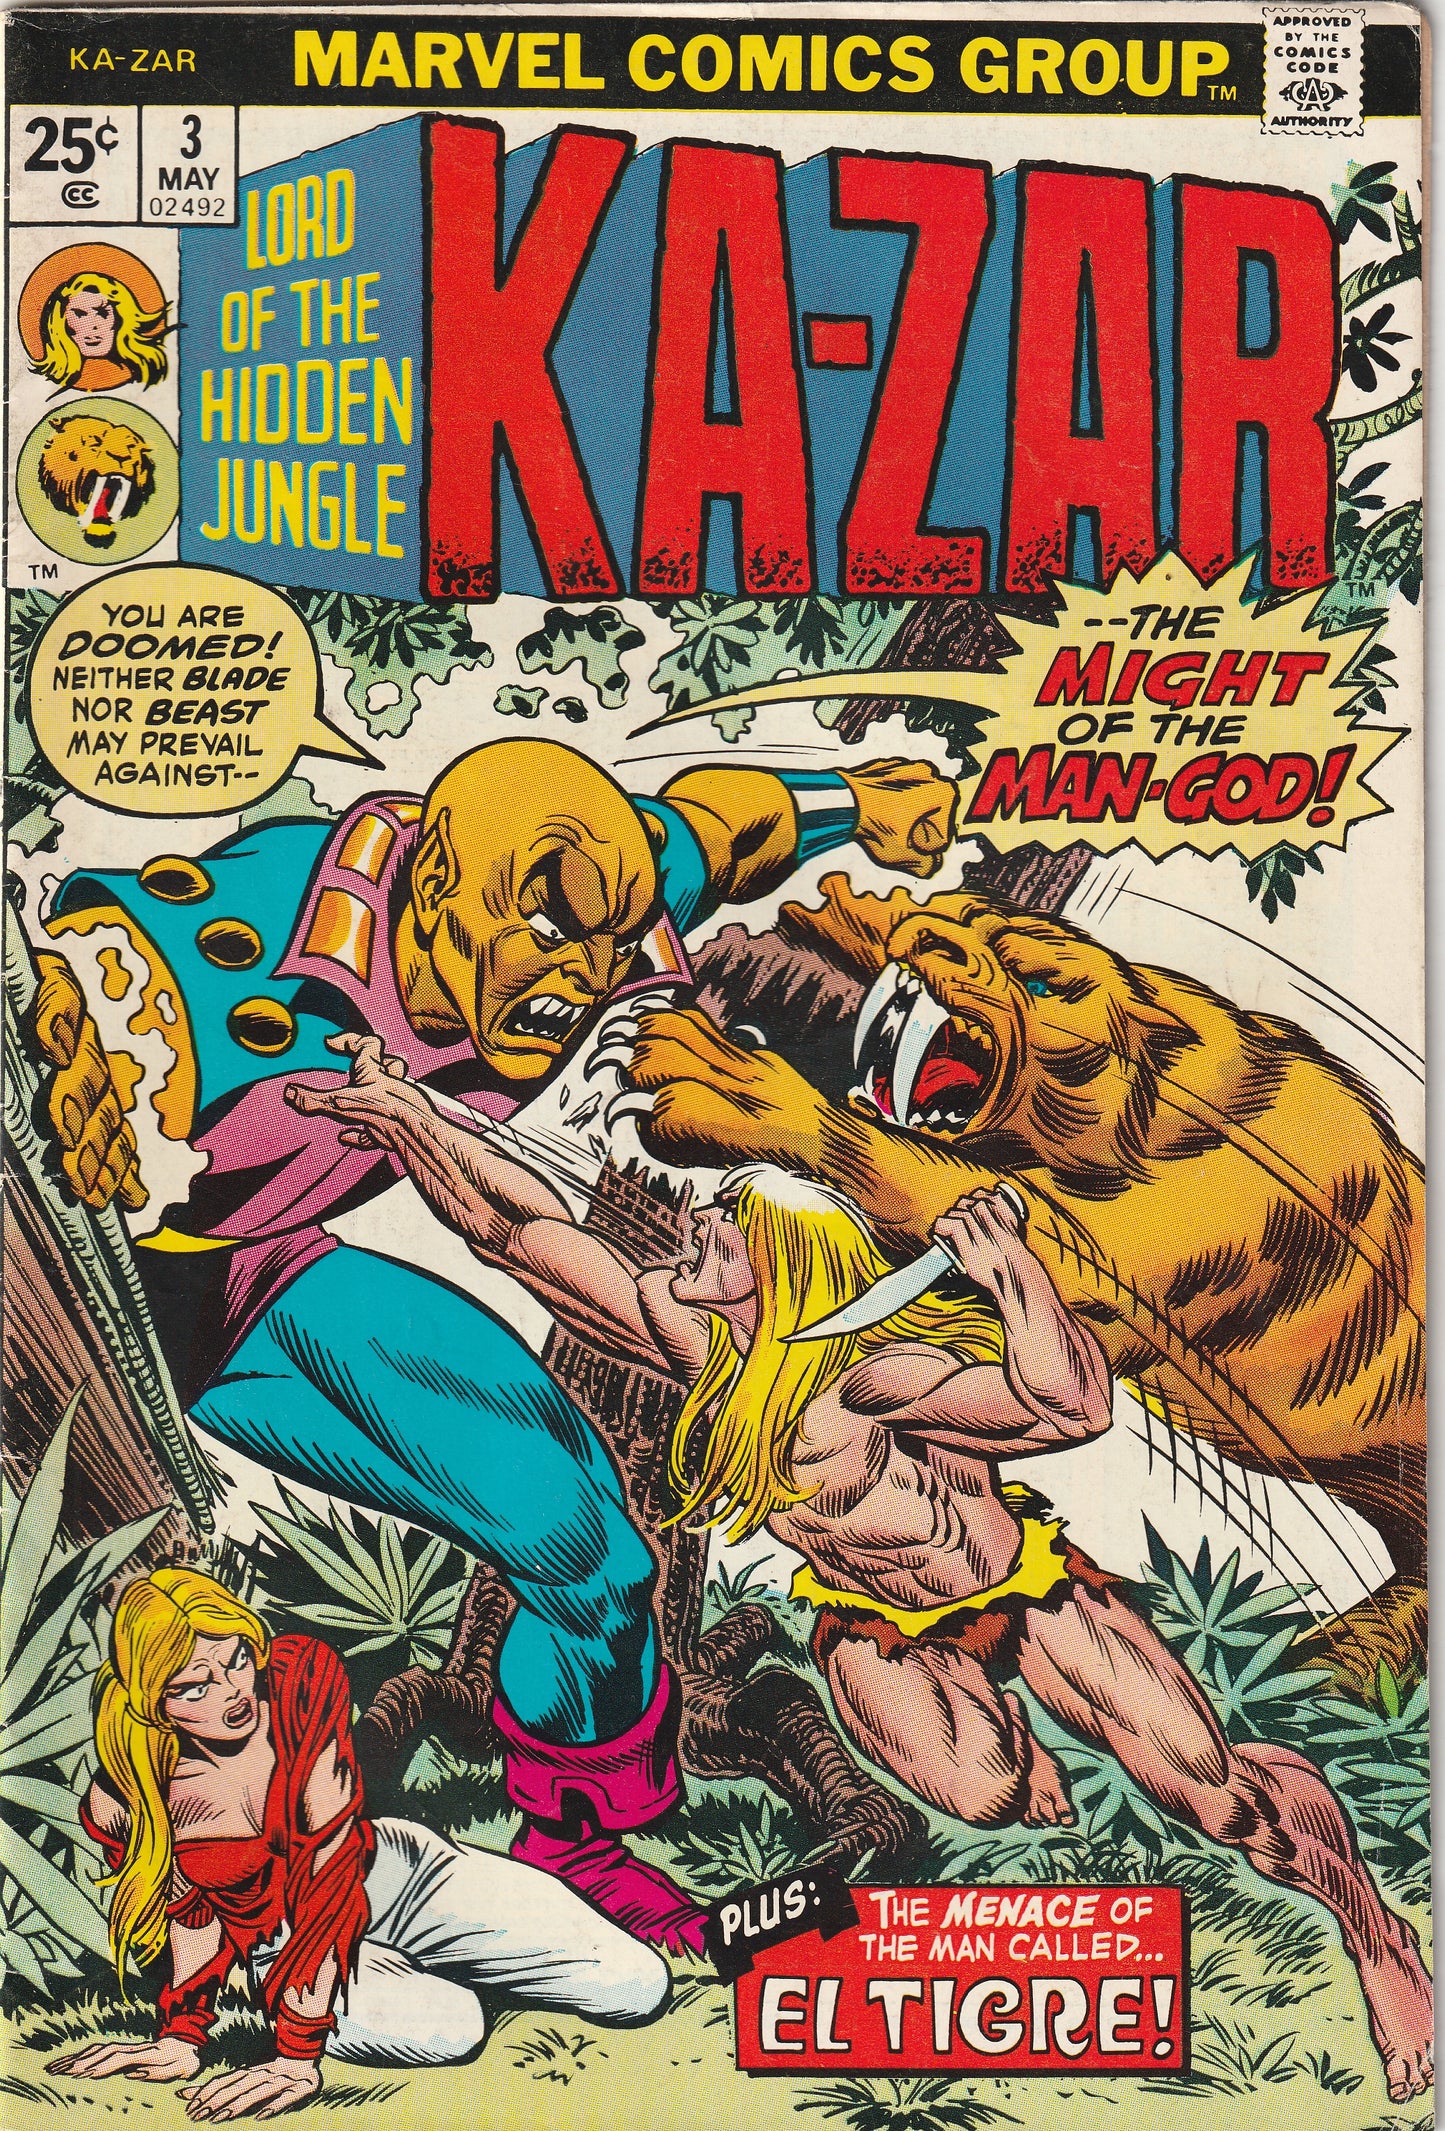 KA-ZAR #3 (1974)